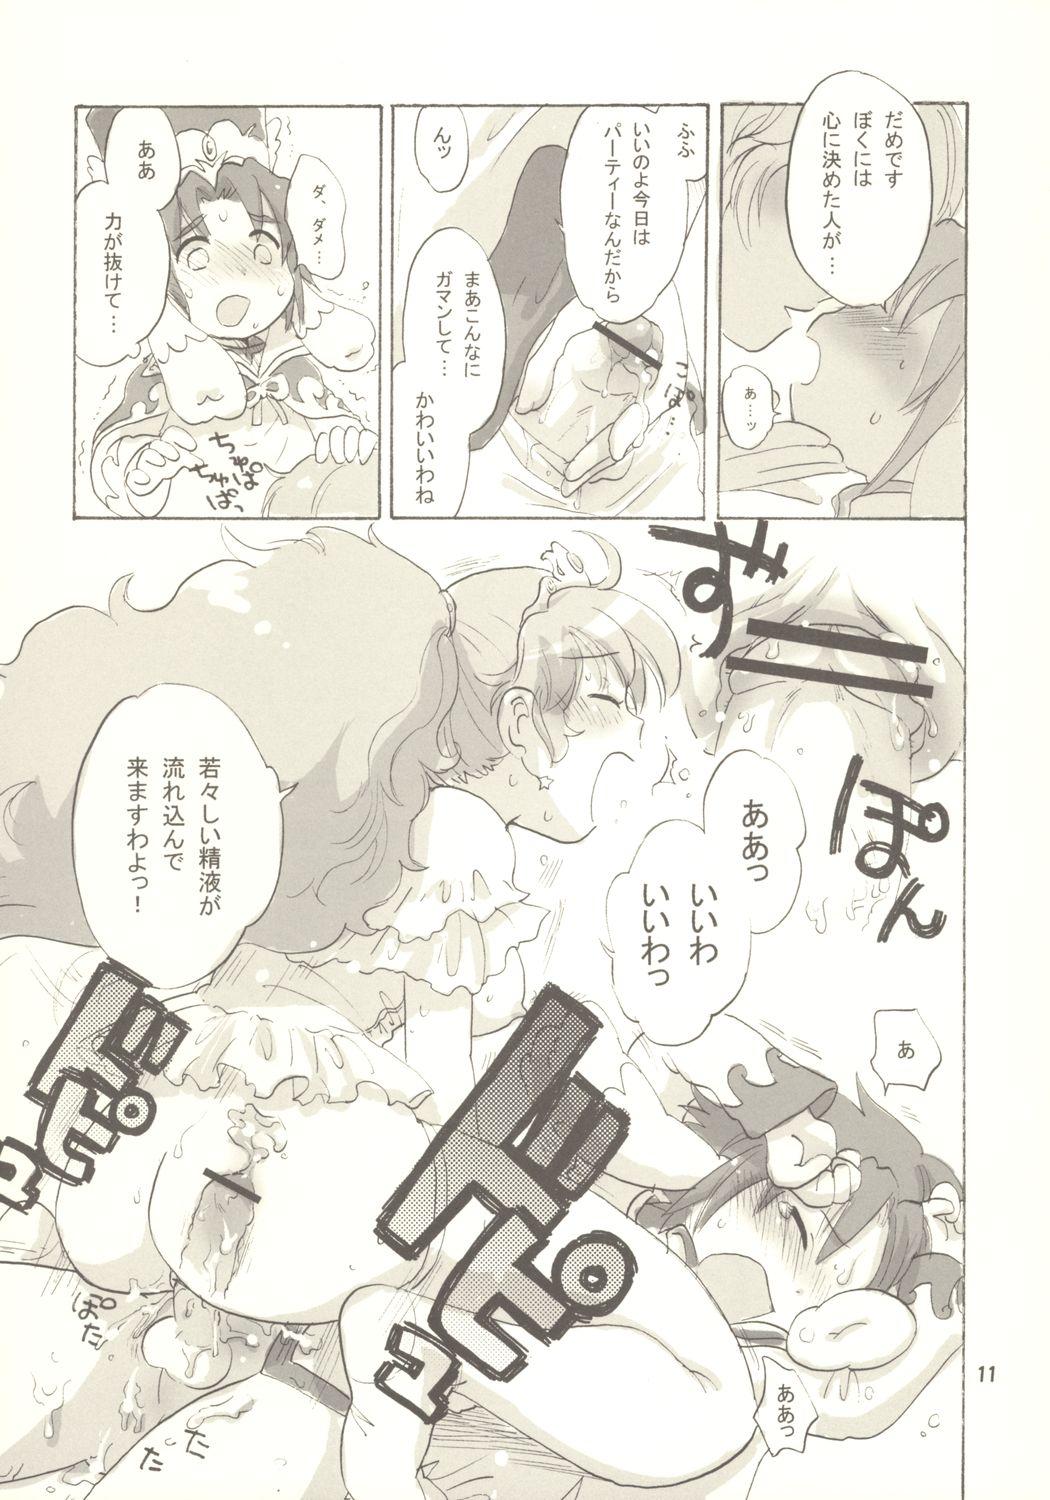 Assfingering Egao ni Nare - Please give me smiling face - Fushigiboshi no futagohime Swinger - Page 10